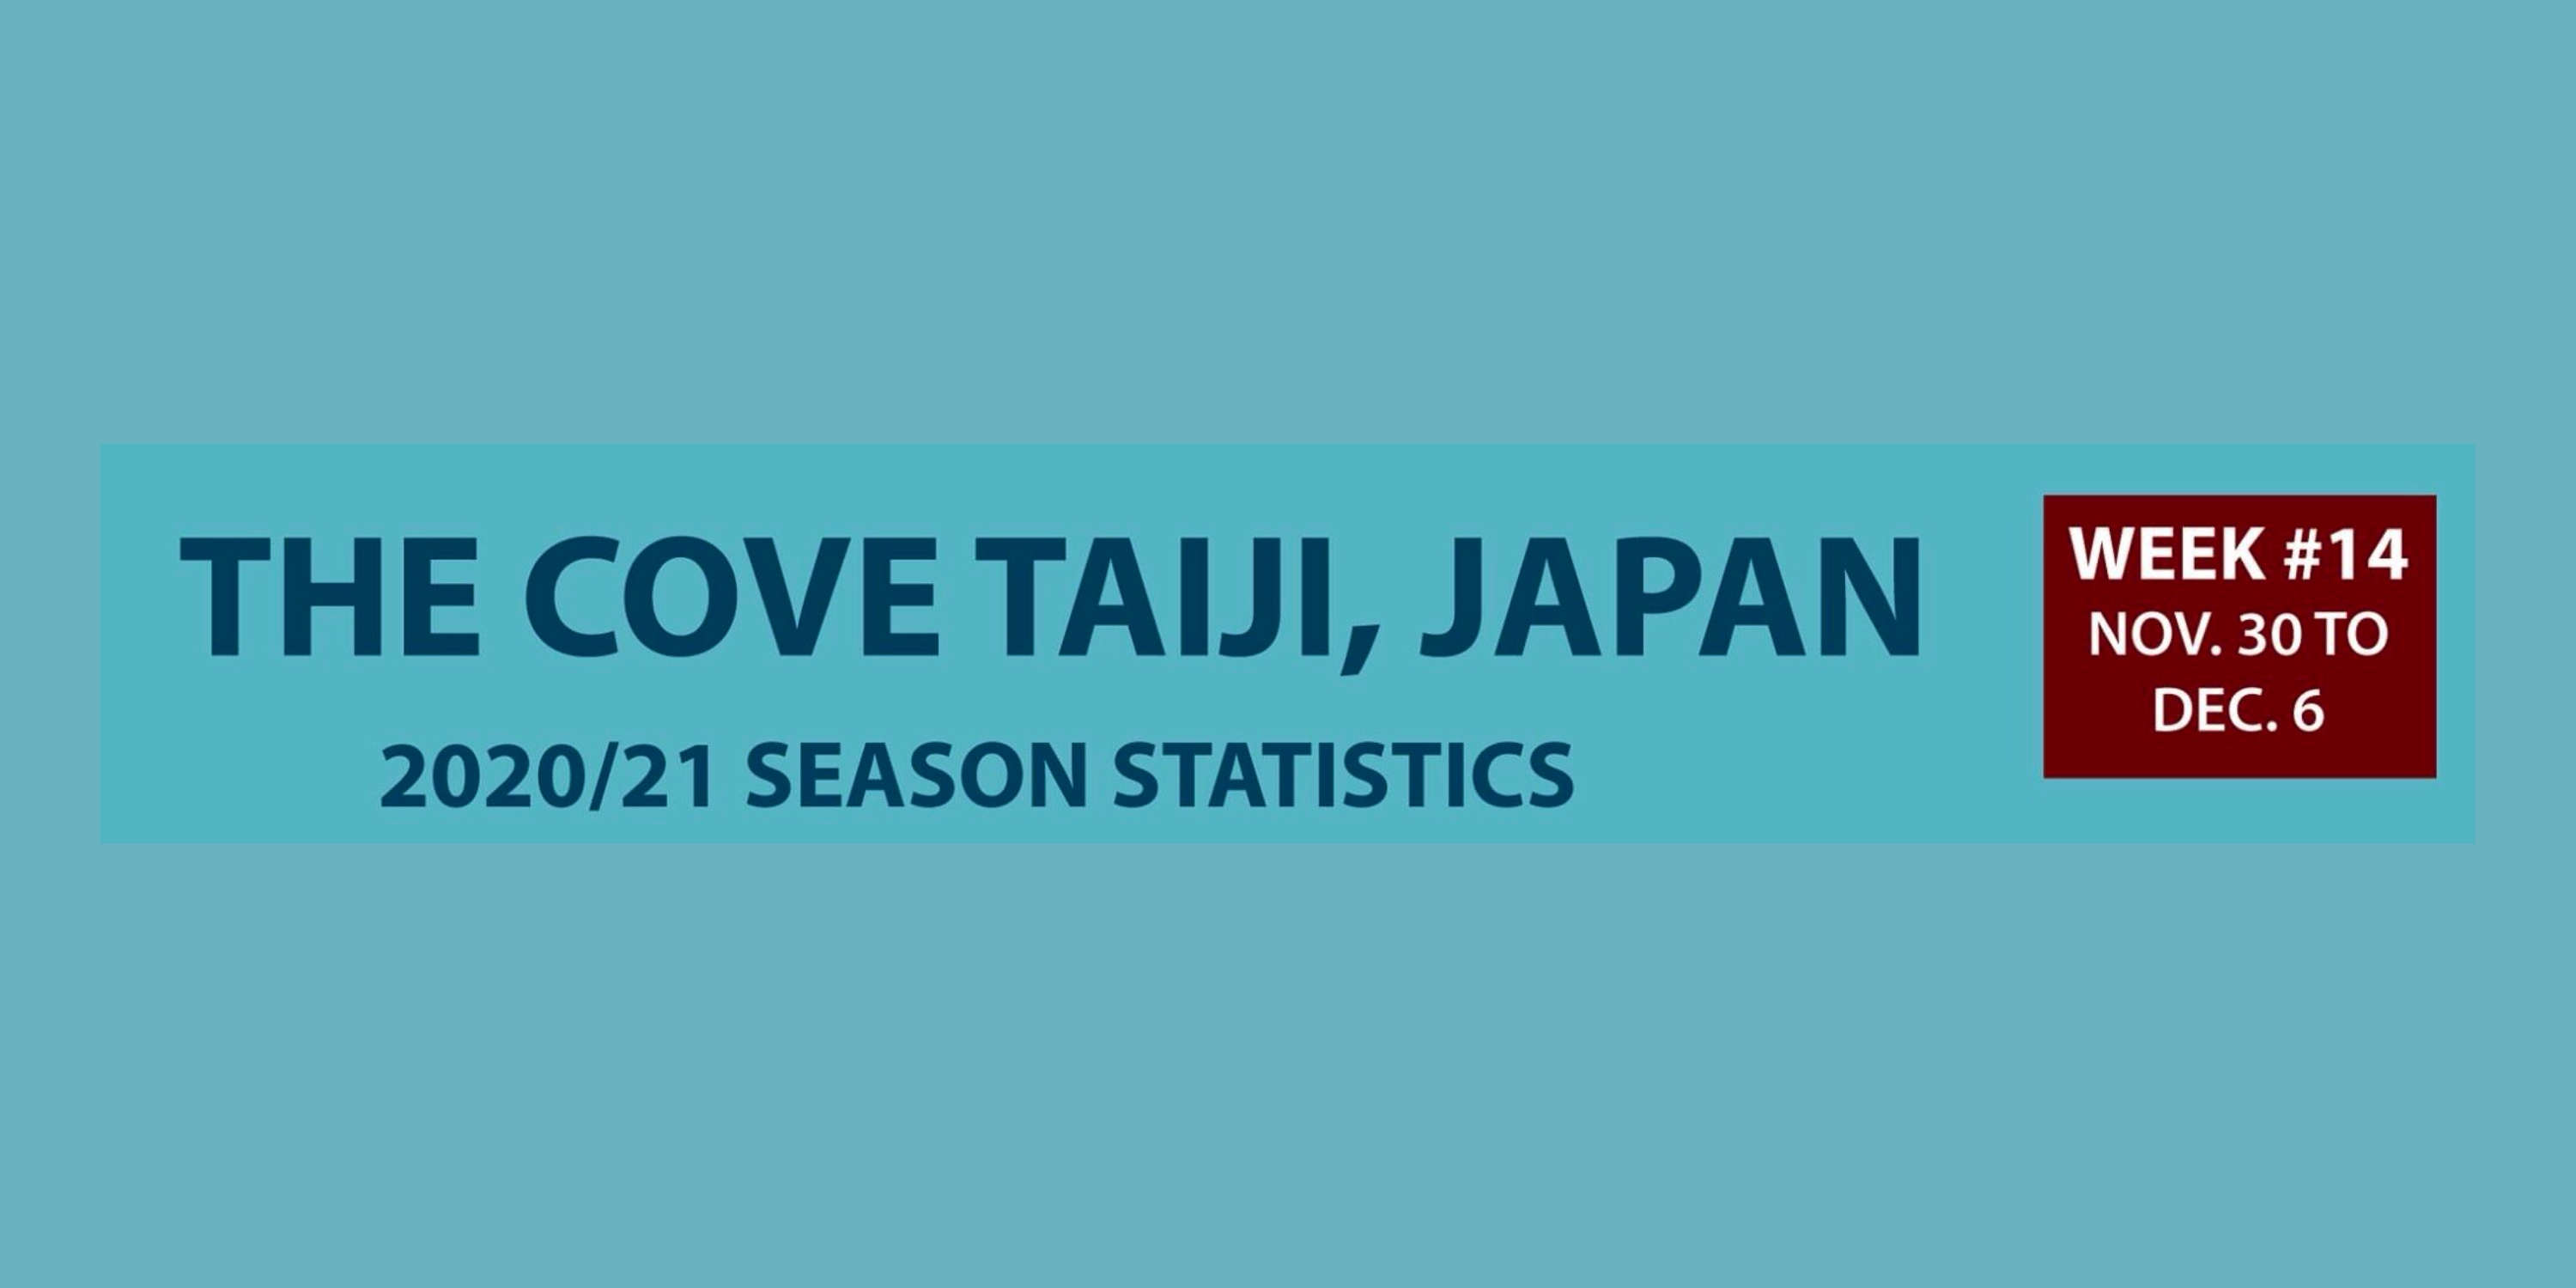 Chasse au dauphin à Taïji (Japon) – Bilan semaine du 30 novembre au 6 décembre 2020 #14